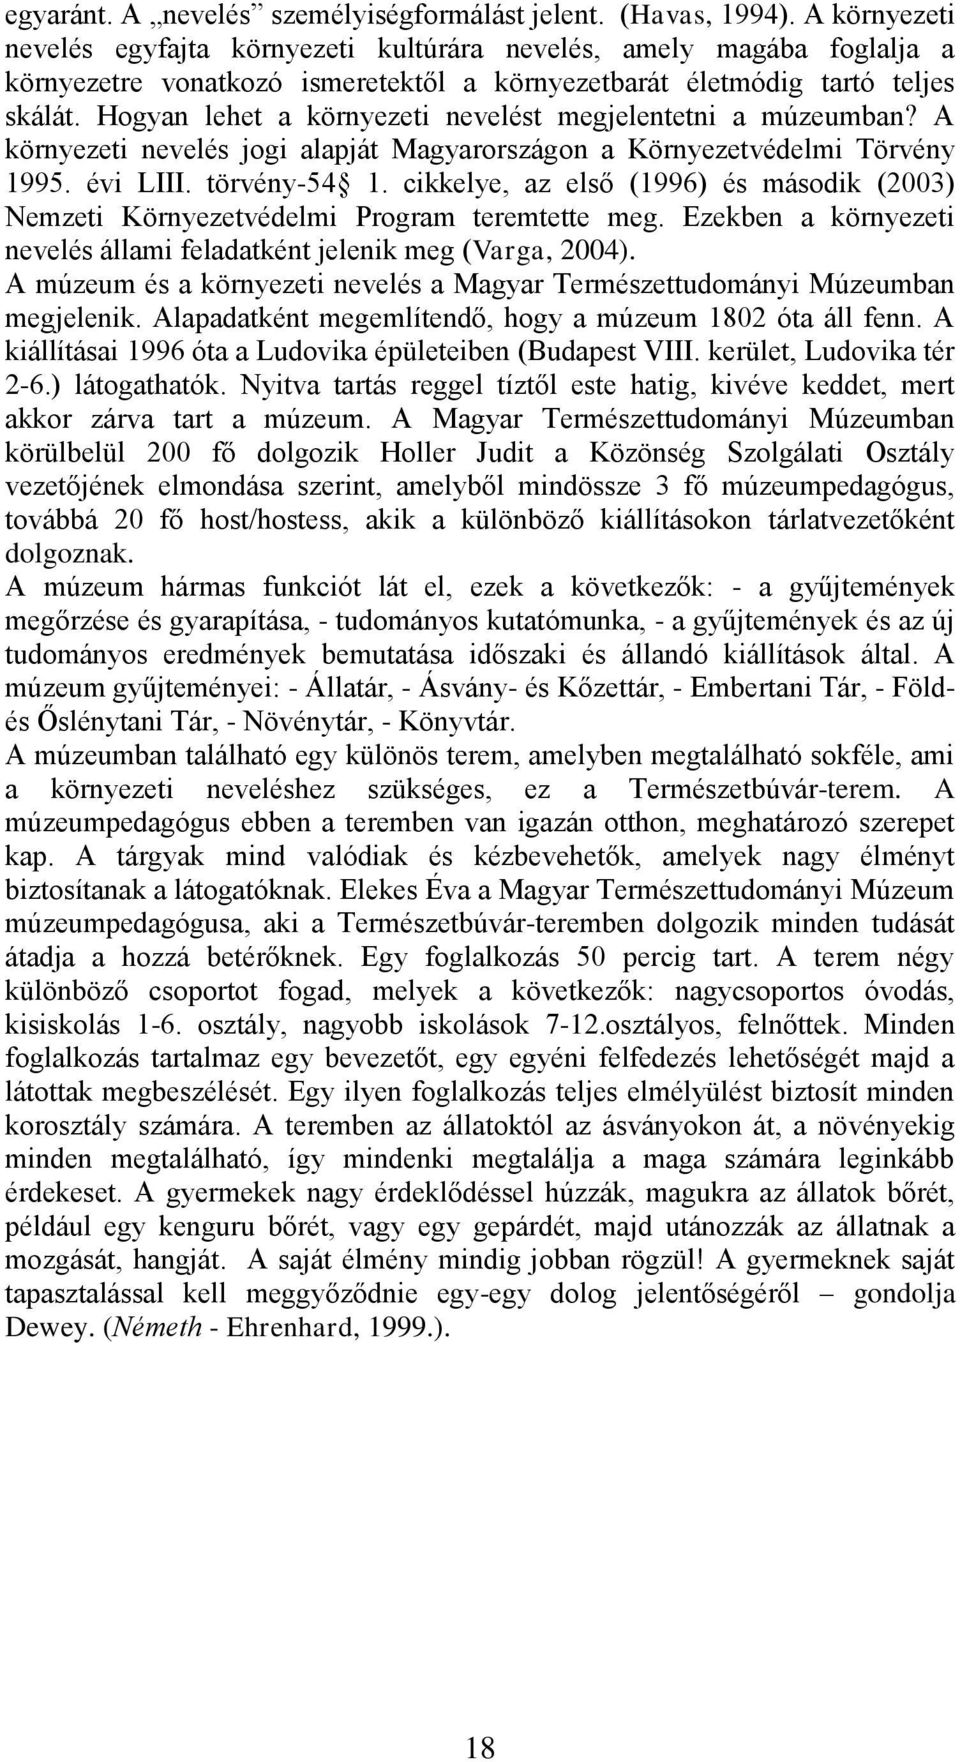 Hogyan lehet a környezeti nevelést megjelentetni a múzeumban? A környezeti nevelés jogi alapját Magyarországon a Környezetvédelmi Törvény 1995. évi LIII. törvény-54 1.